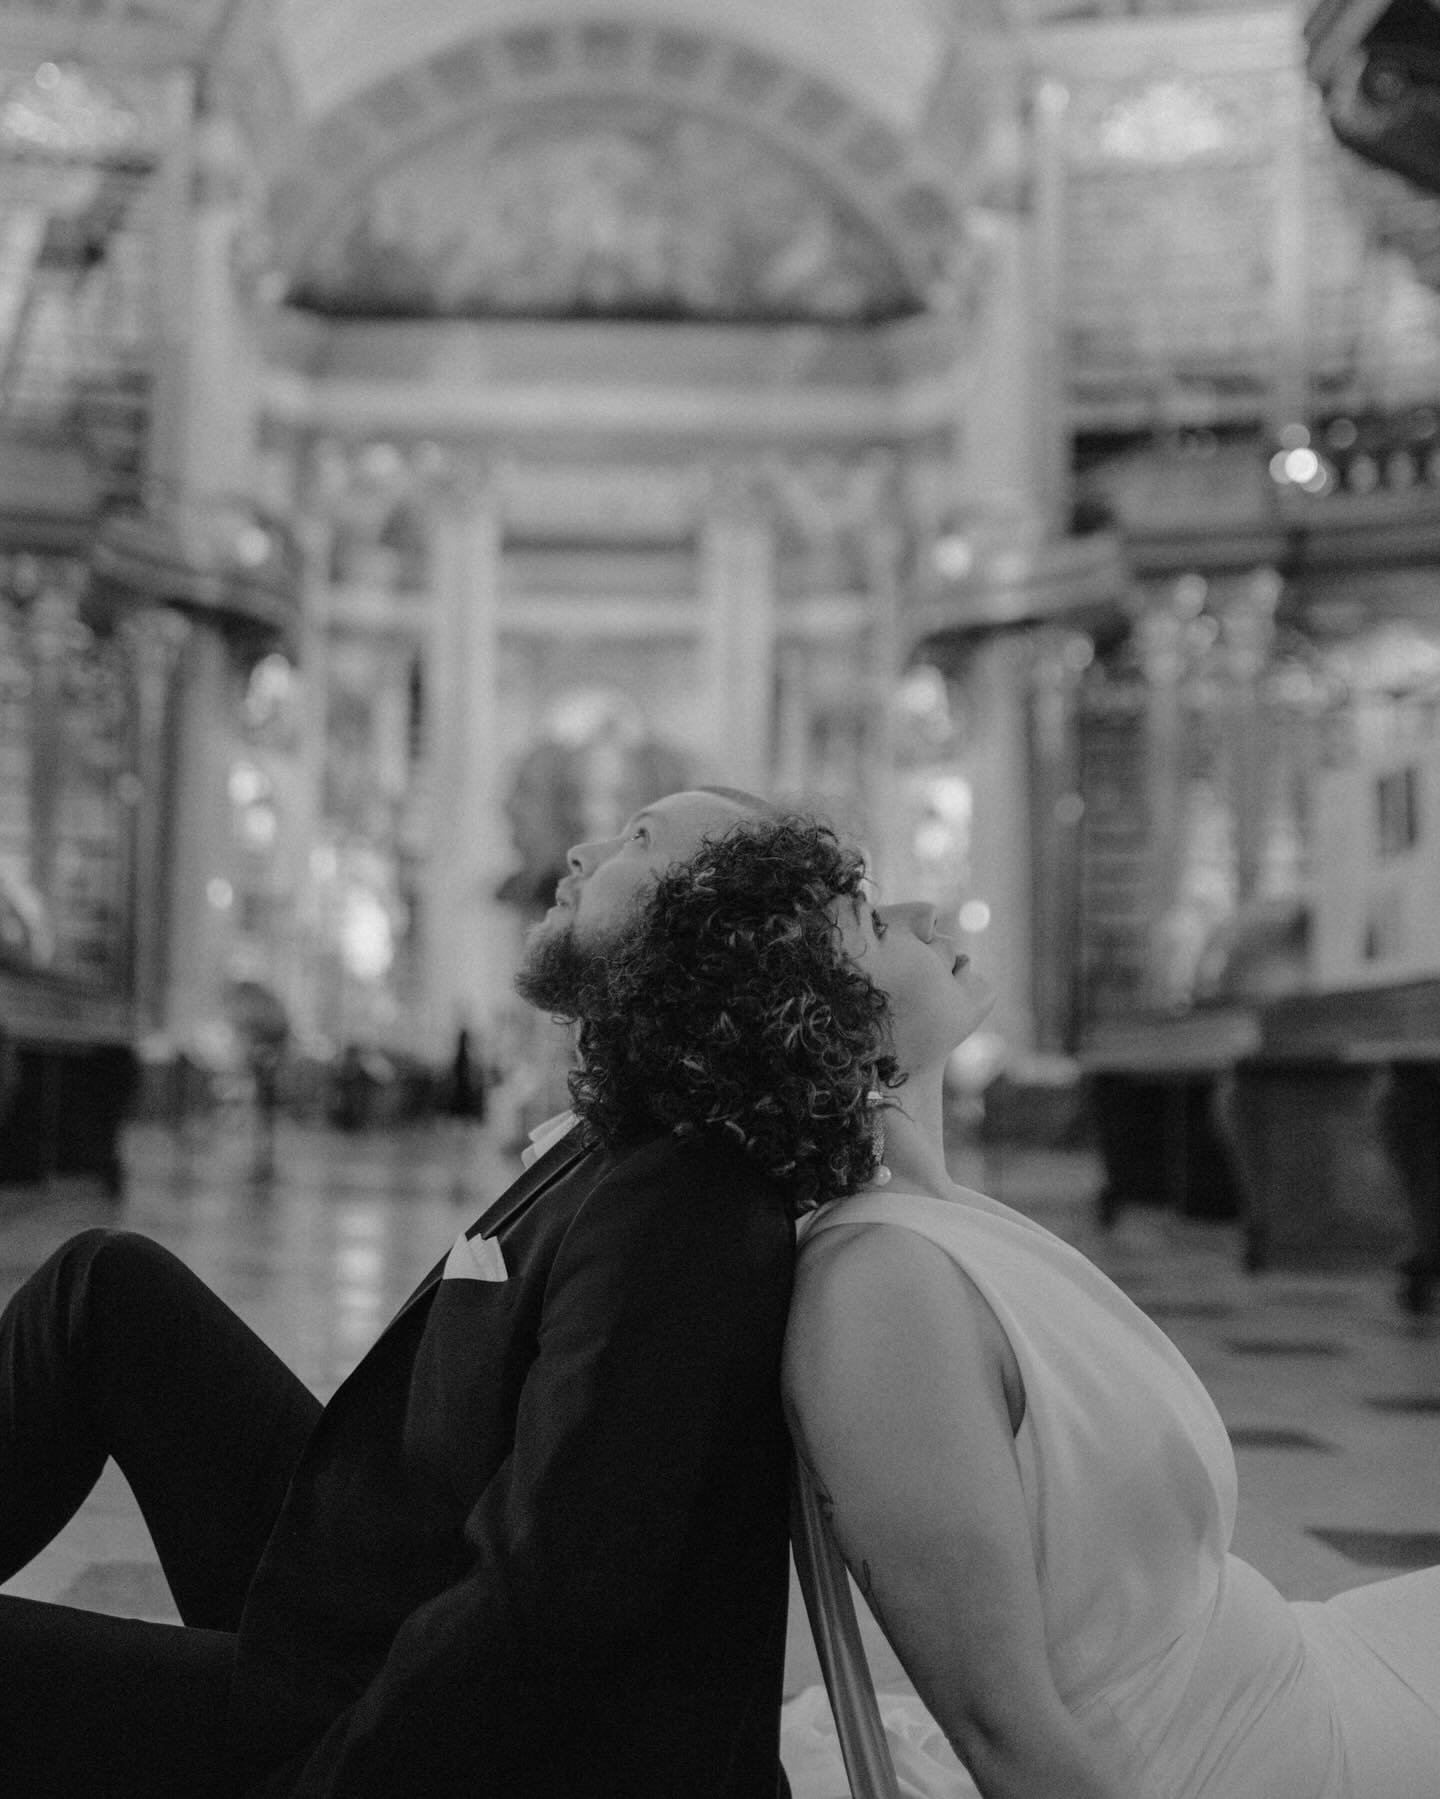 A Vienna Romance 🤍 #viennawedding 

Concept &amp; Photography: @kathrinbuschmann_fotografie
Coordination, Planning &amp; Photography: @martina.berger.fotografiert
Location: @nationalbibliothek
Dress: @millanova von @loveglowconcept
H&amp;M: @setchao